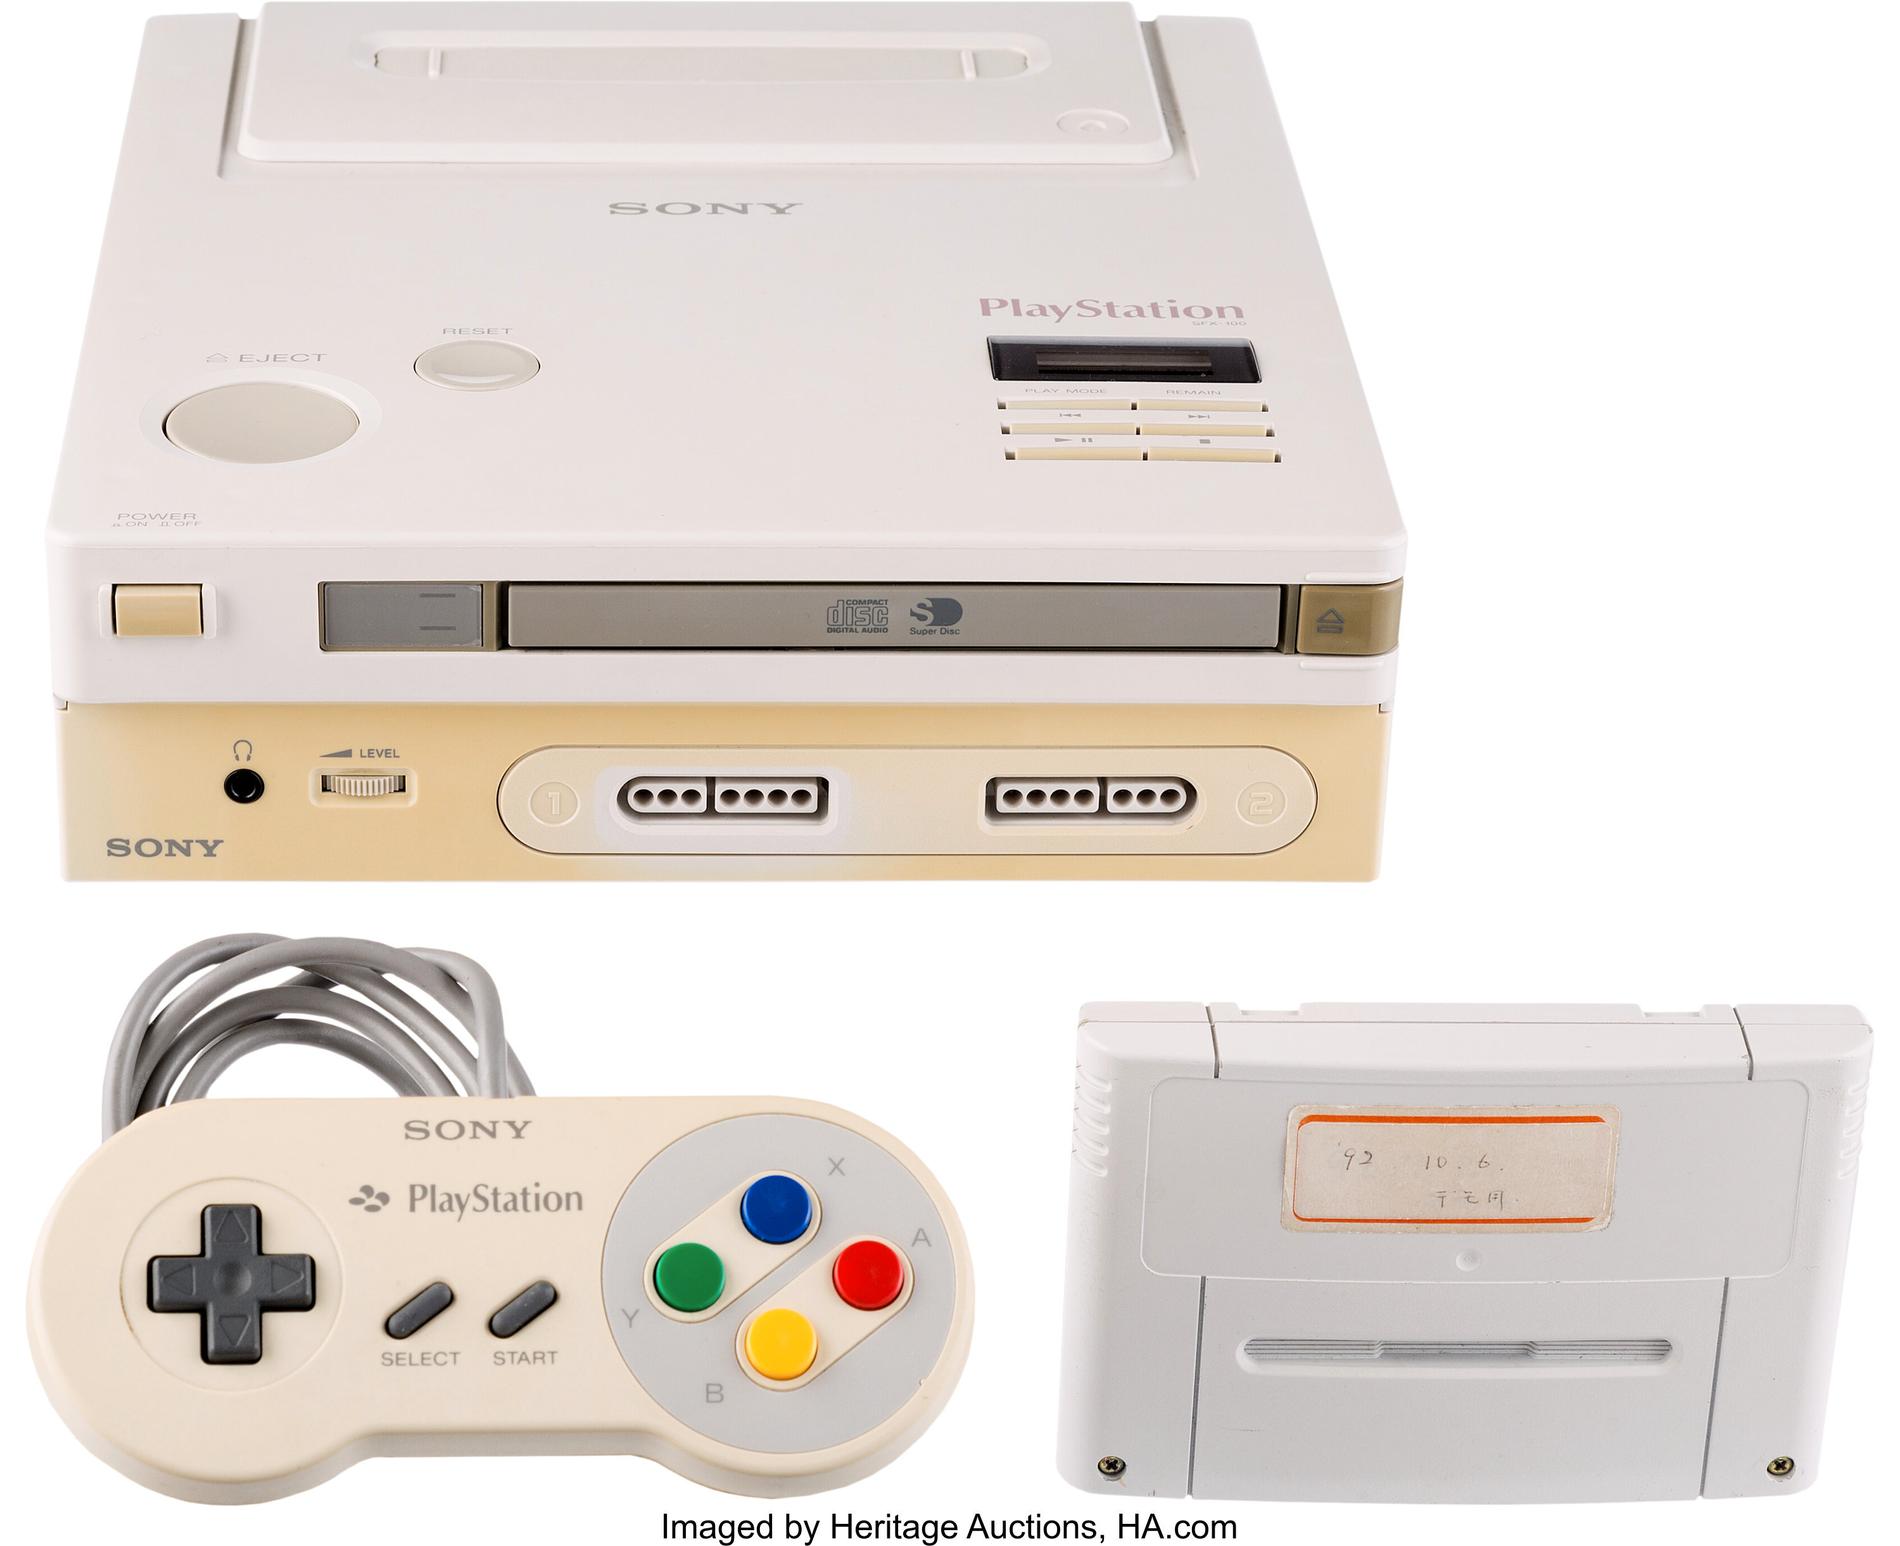 Så här ser den ut, Nintendos och Sonys gemensamma konsol som aldrig släpptes. Pressbild.